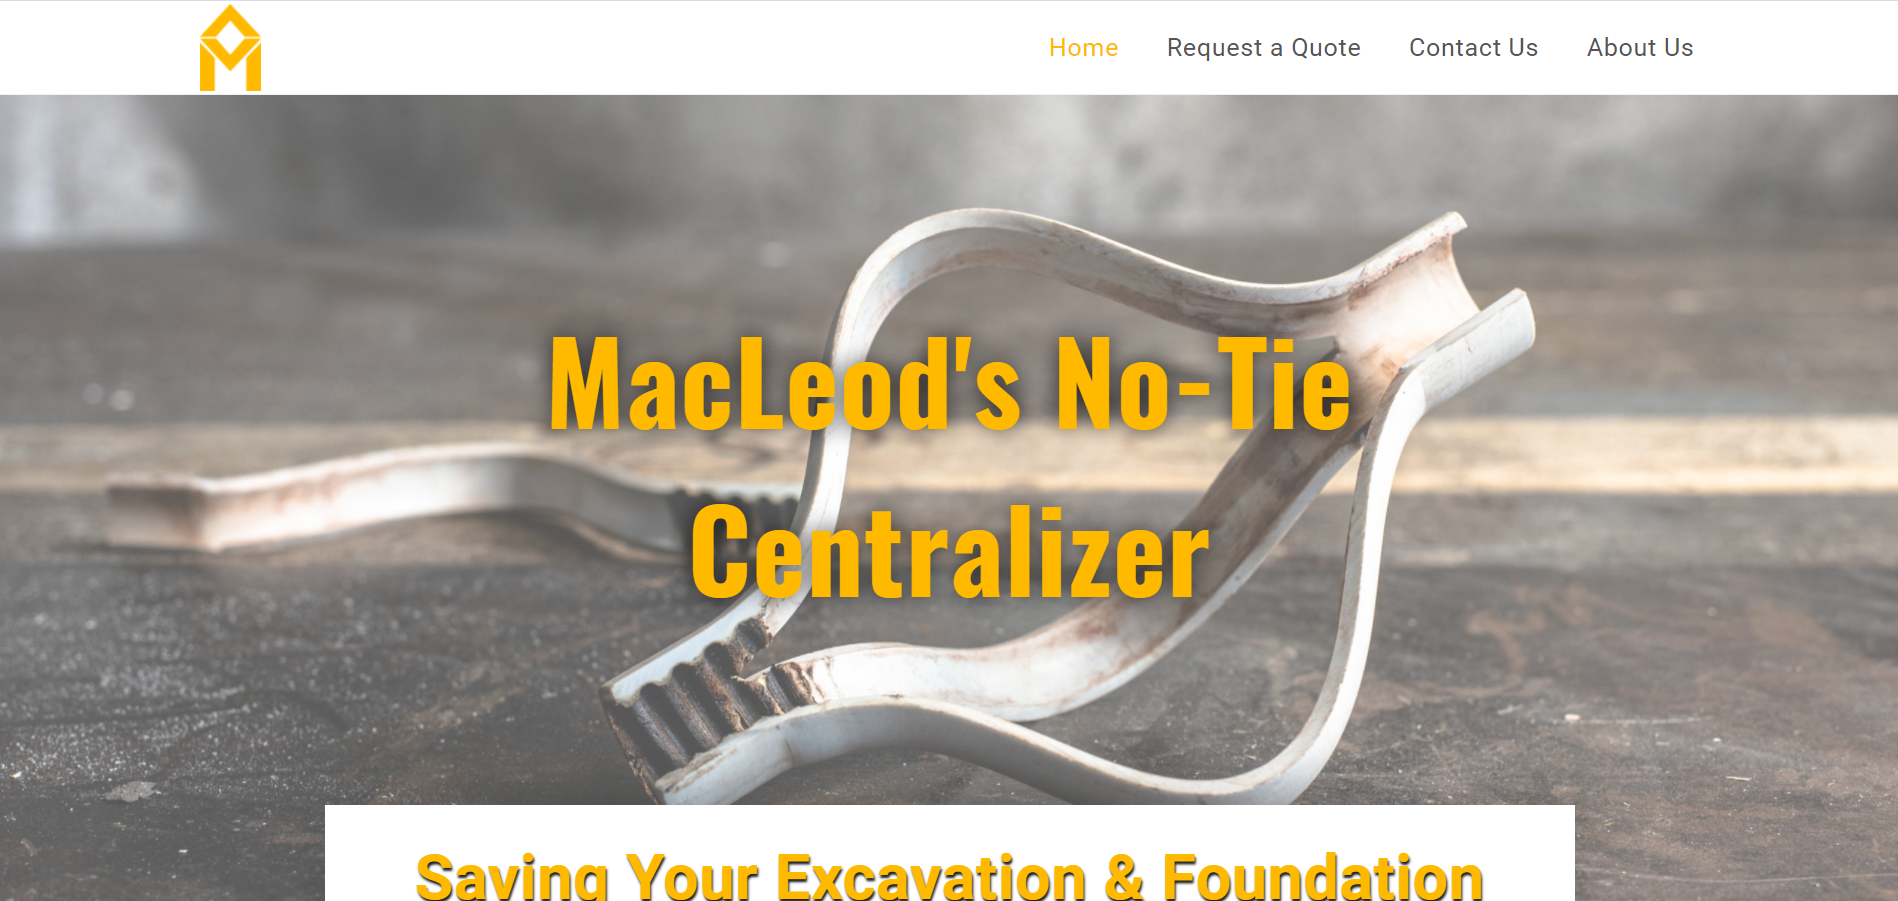 MacLeod's No Tie Centralizer Website